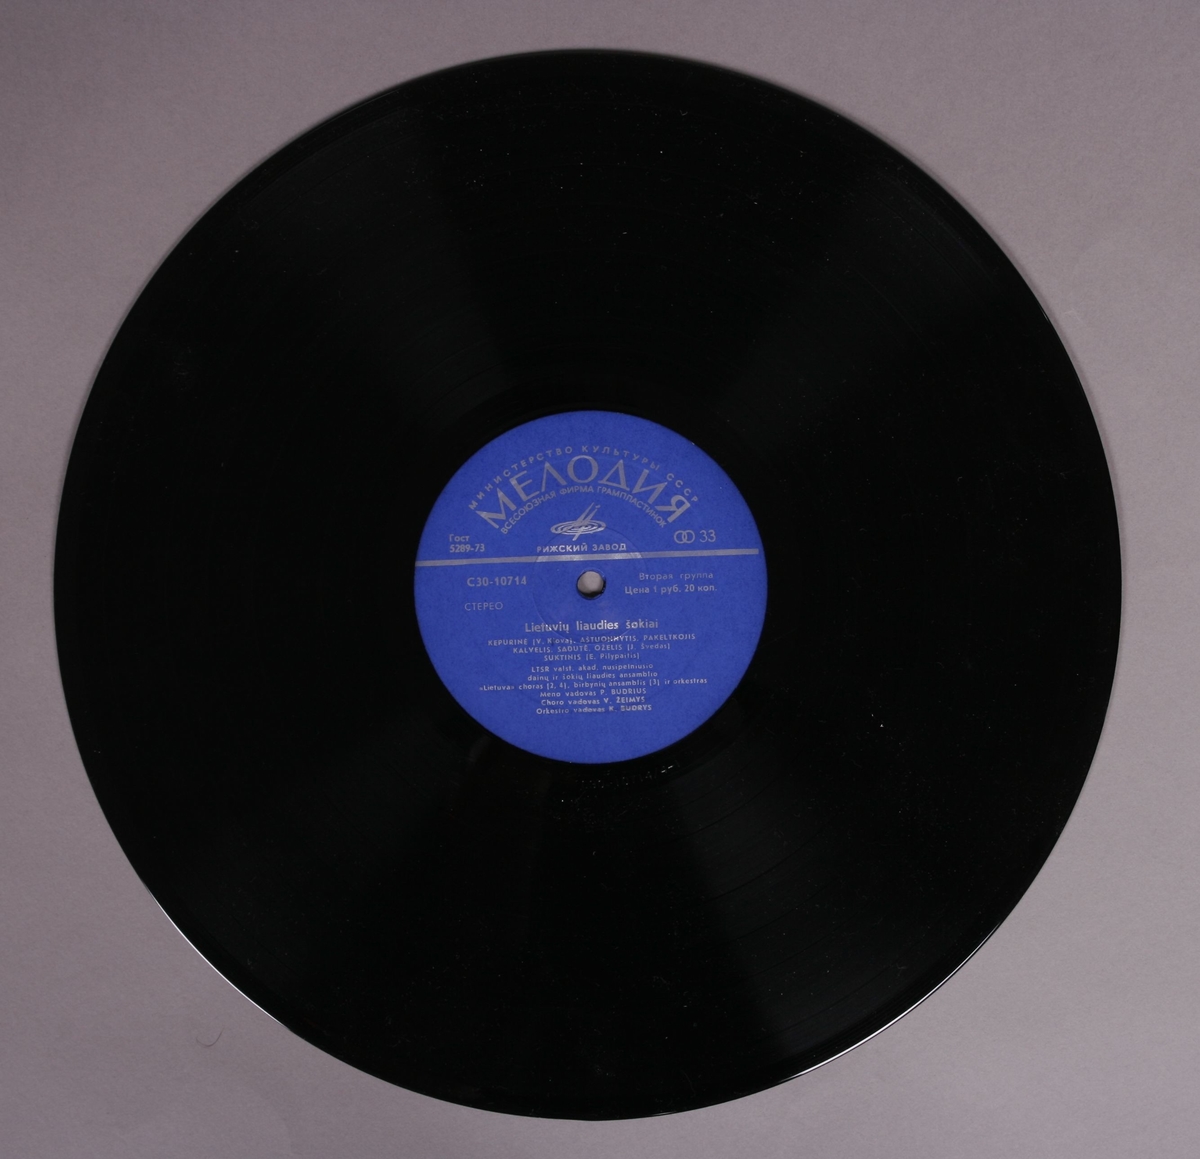 Grammofonplate i svart vinyl og plateomslag i papp. Platen ligger i en plastlomme.